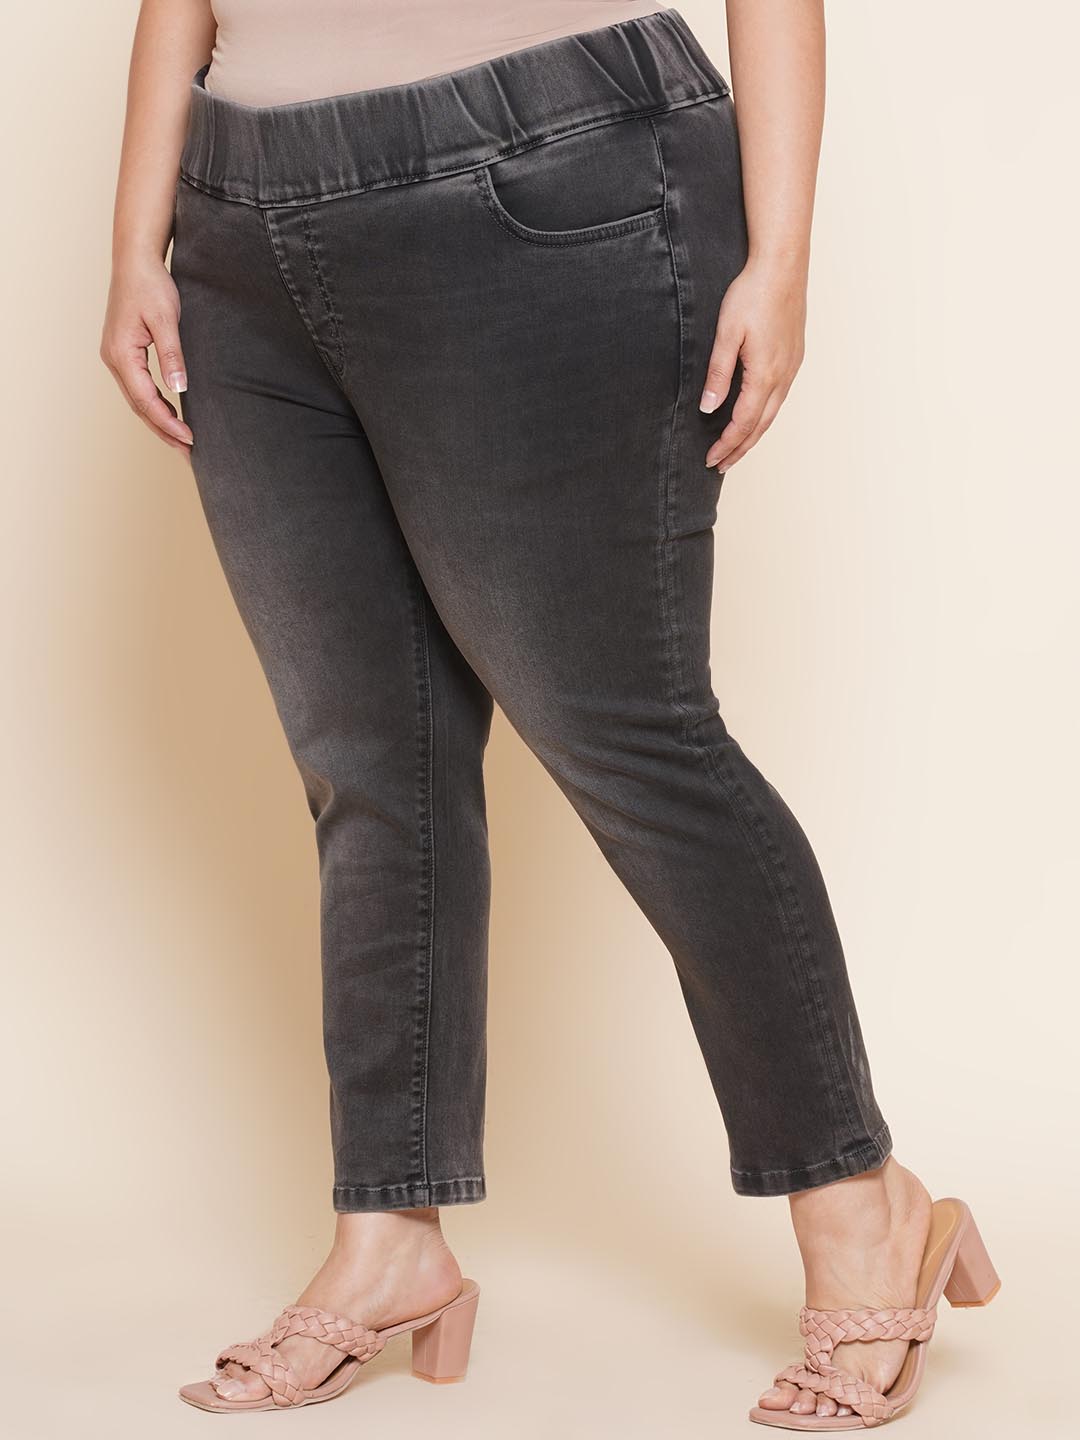 bottomwear_kiaahvi/jeans/KIJ6004/kij6004-4.jpg